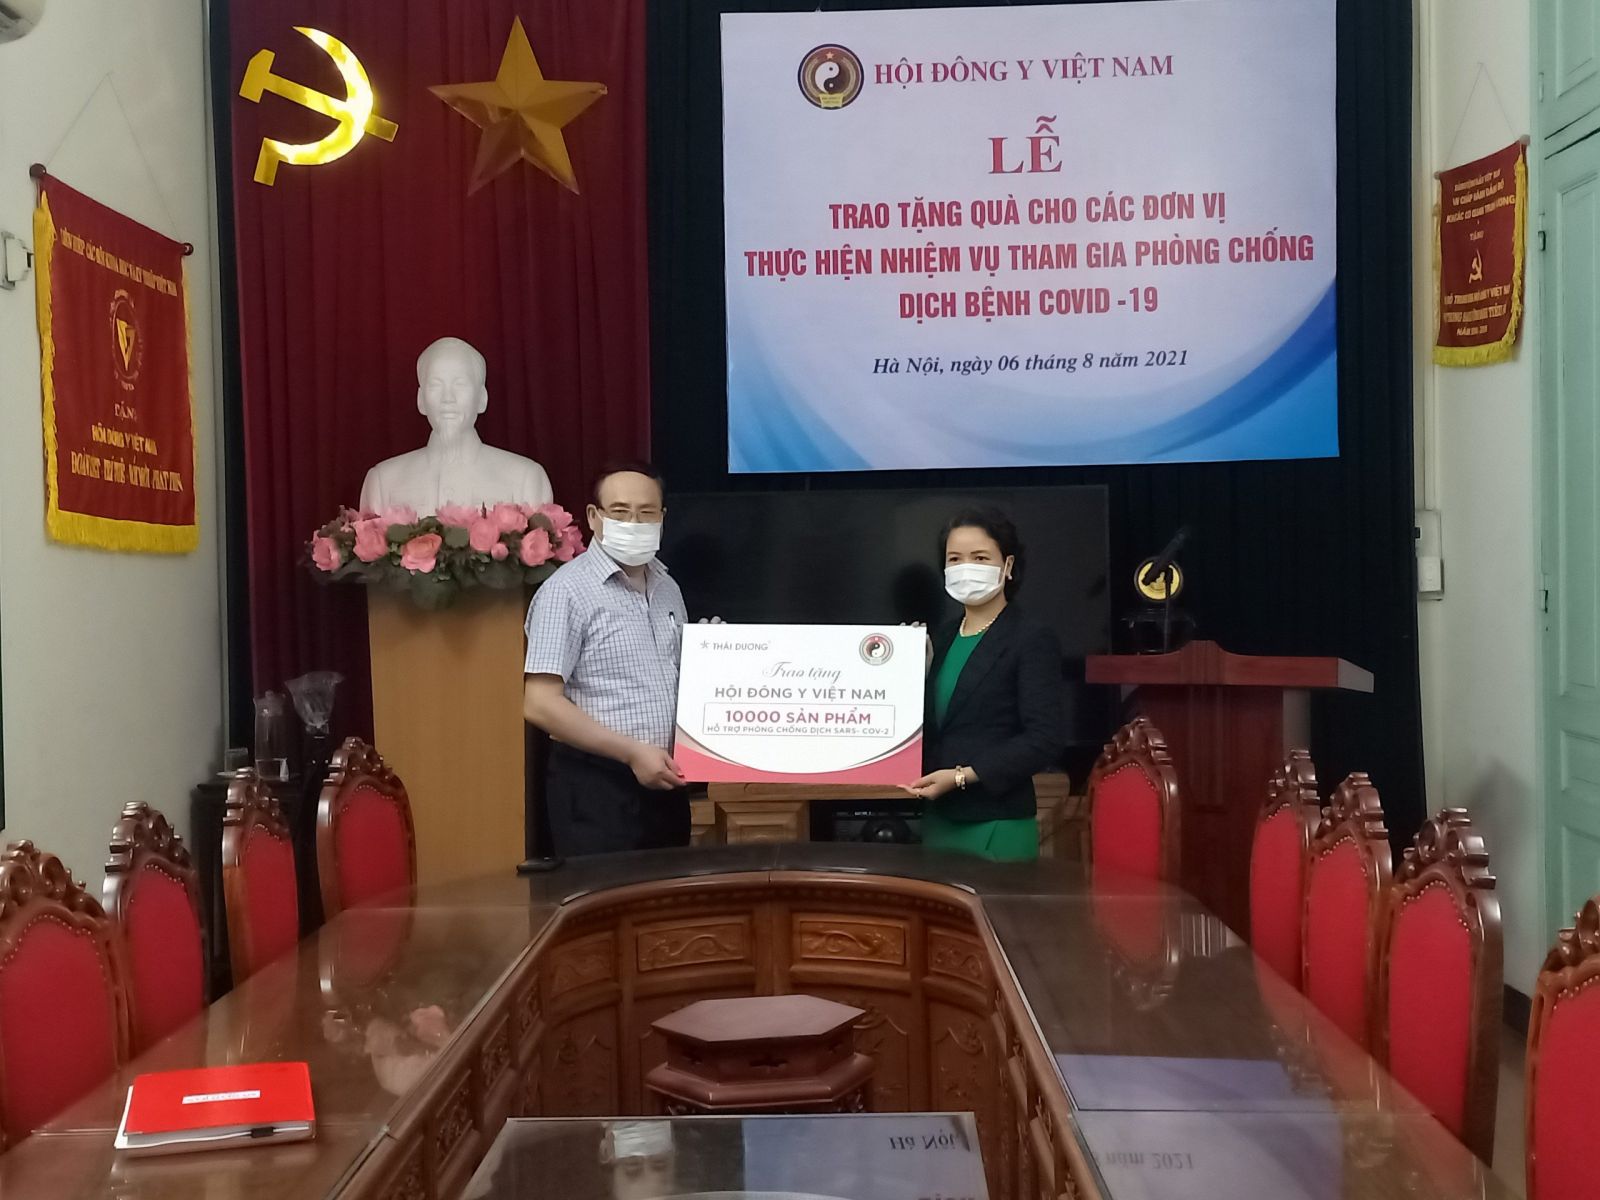 Sao Thái Dương đồng hành cùng hội Đông Y Việt Nam